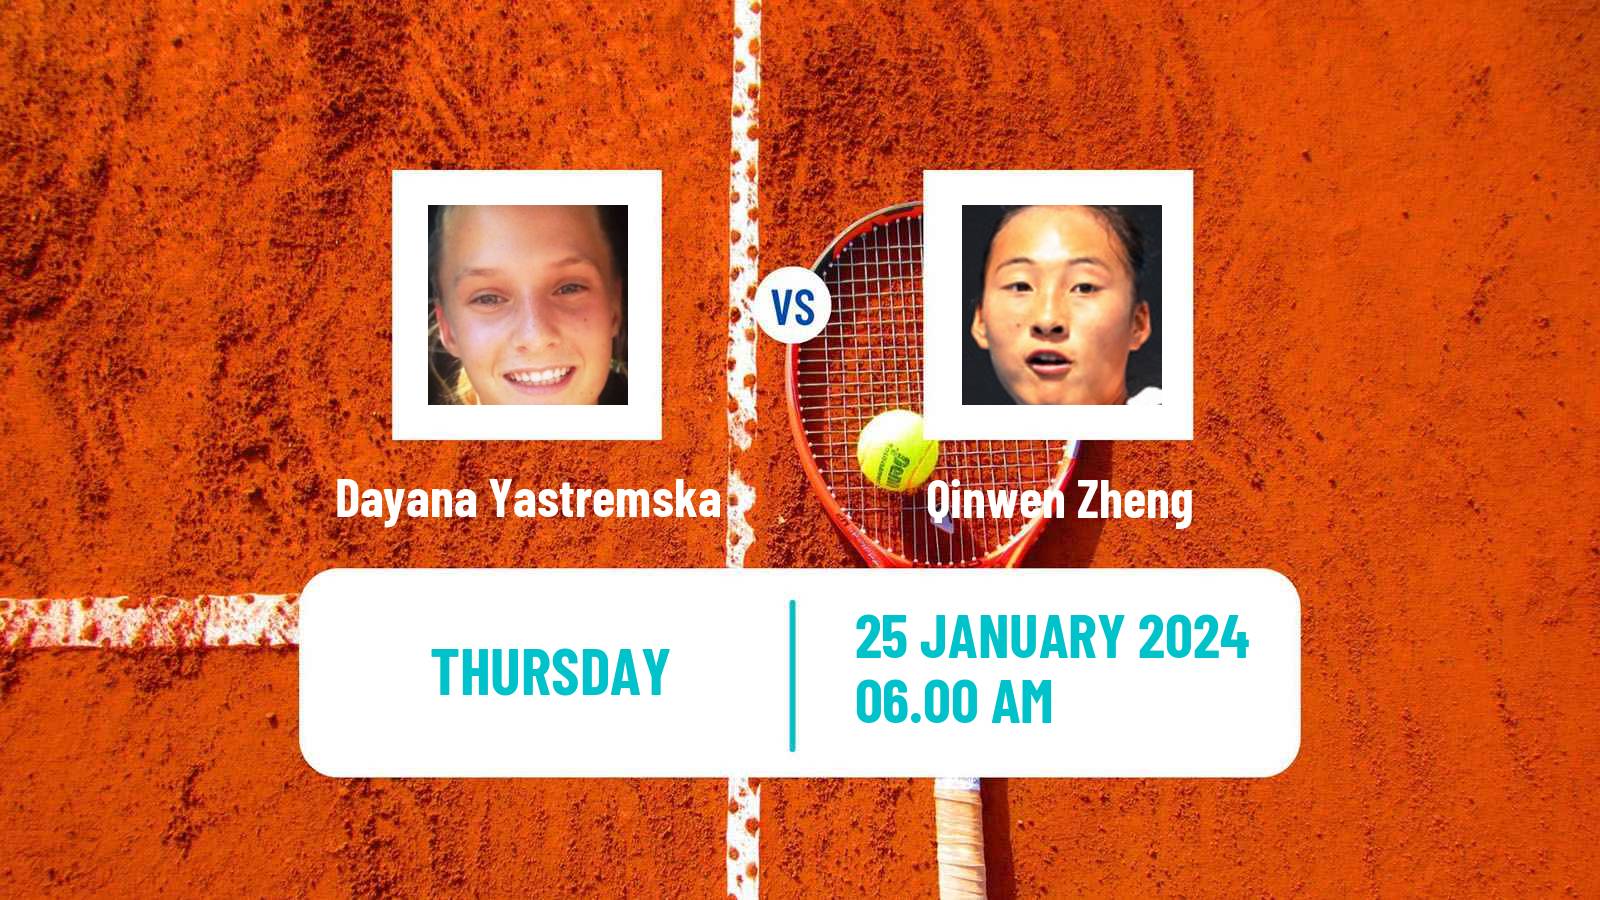 Tennis WTA Australian Open Dayana Yastremska - Qinwen Zheng